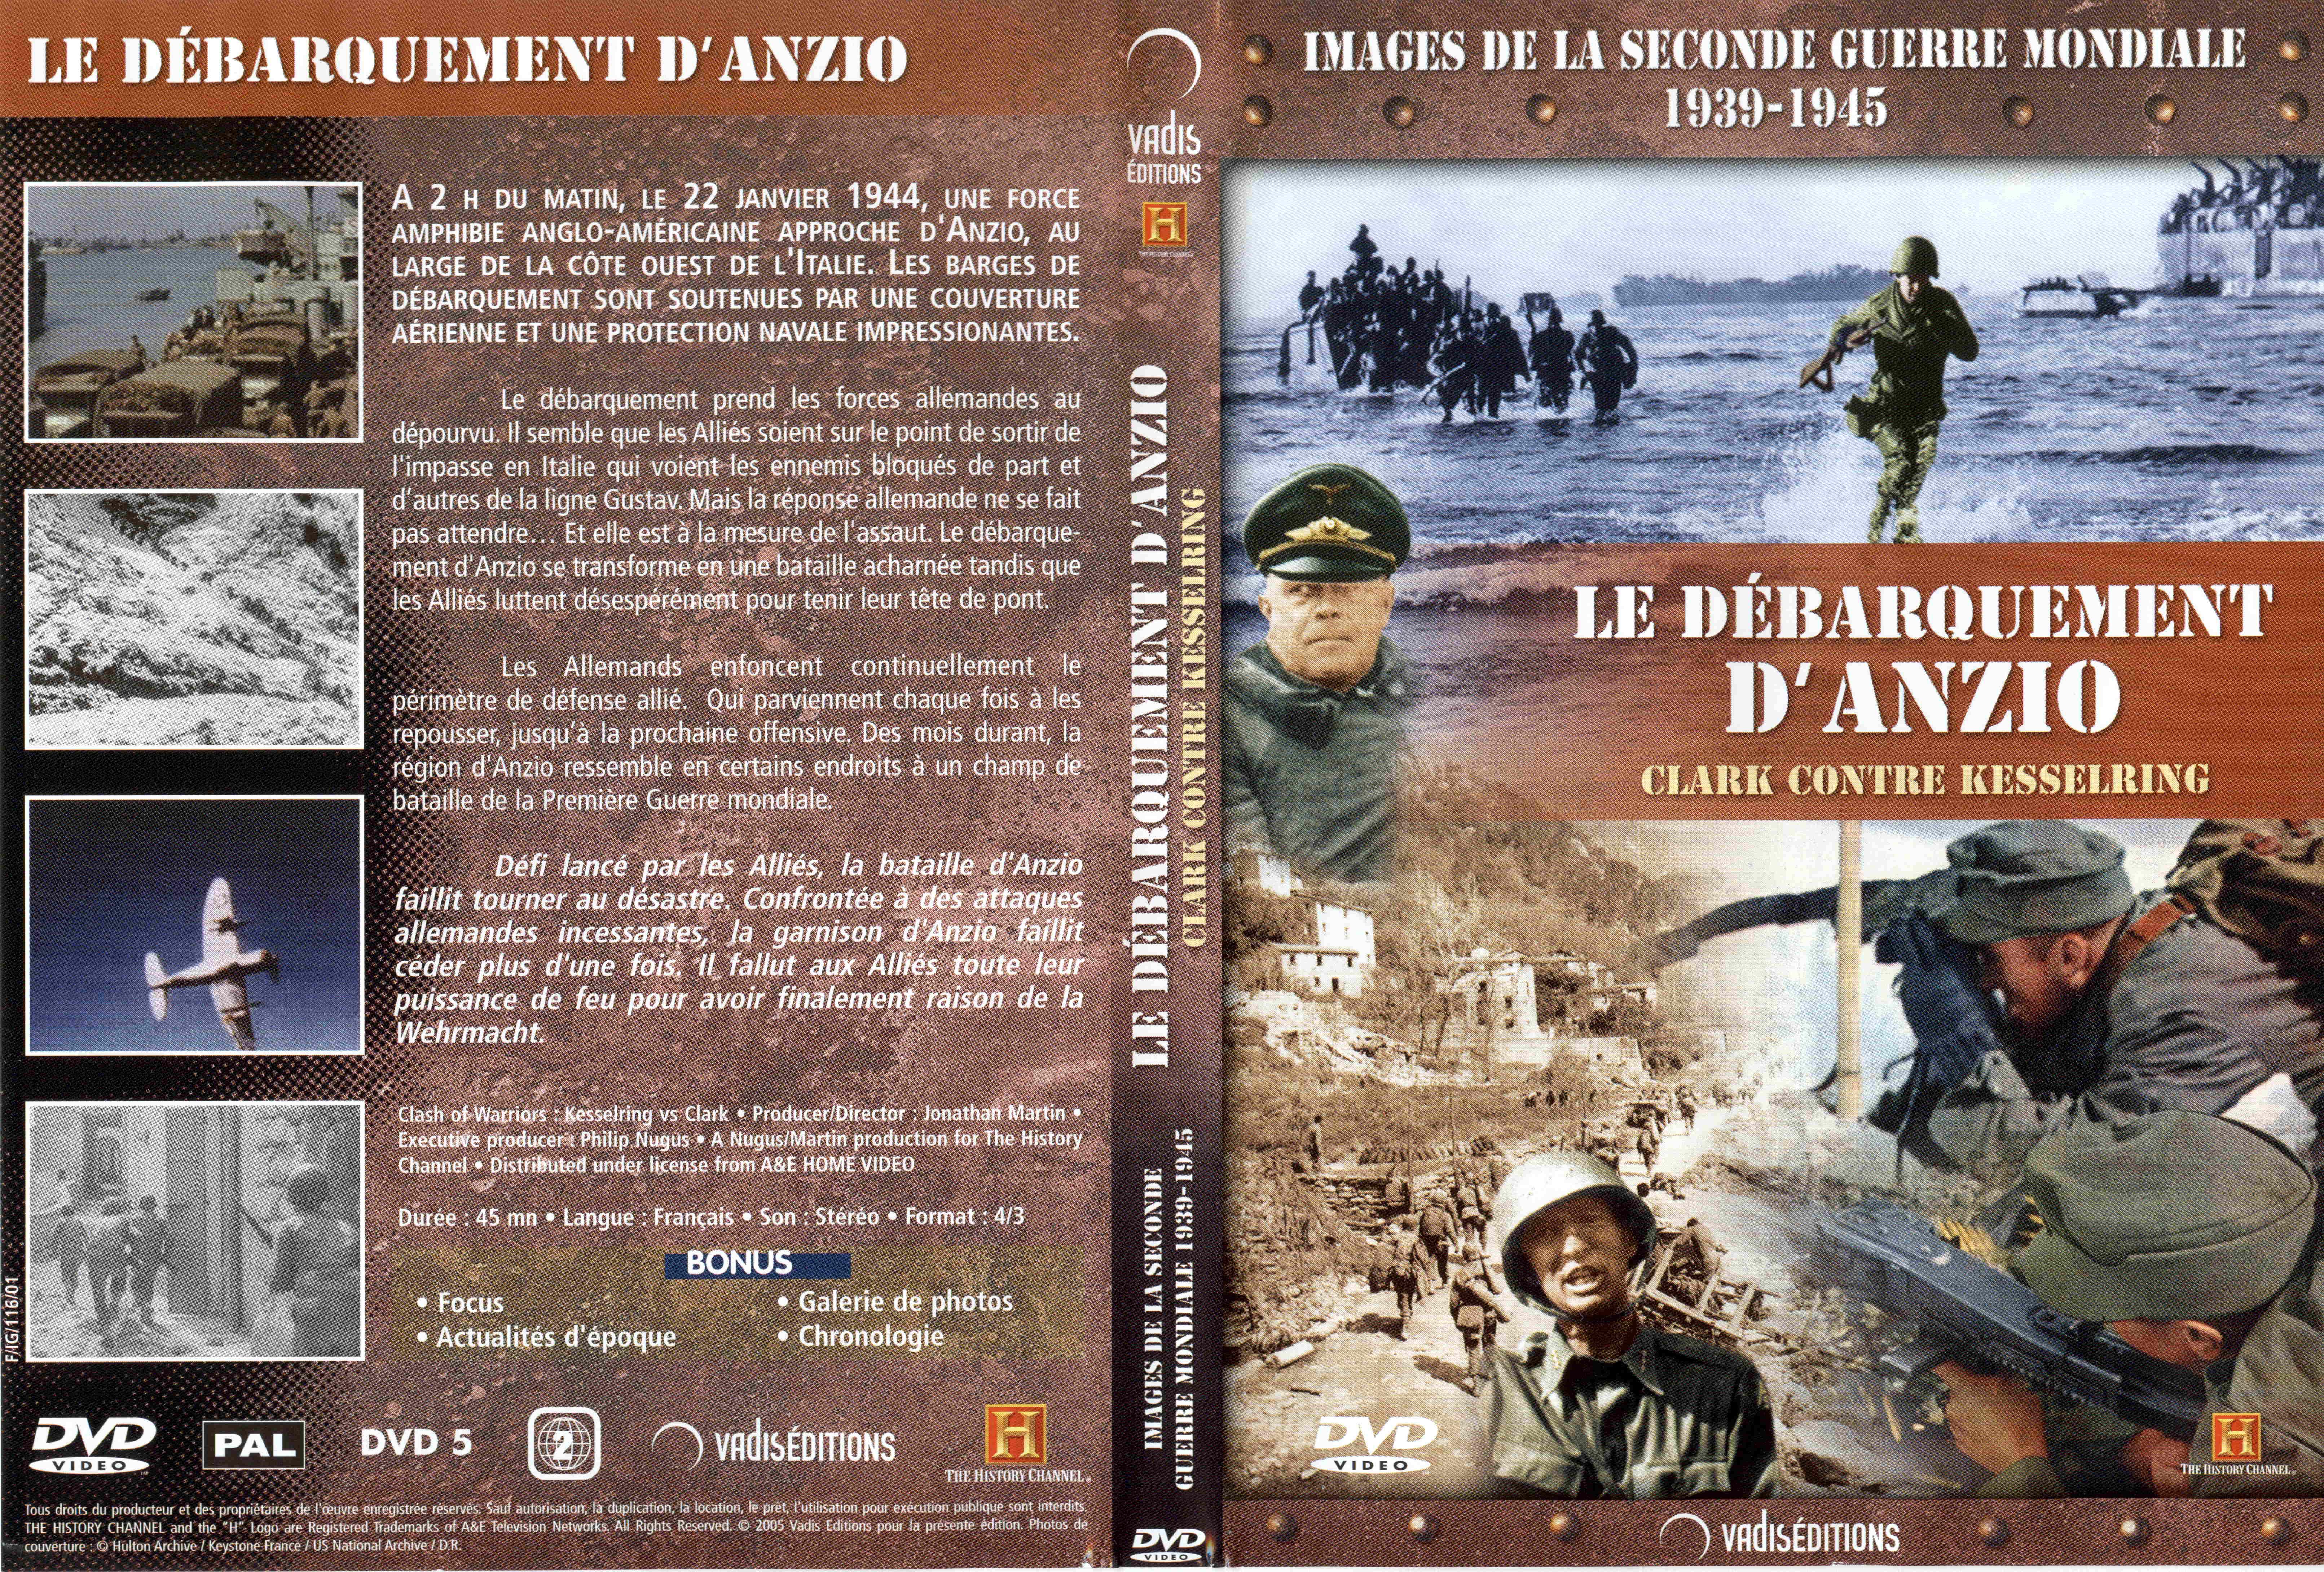 Jaquette DVD Images de la seconde guerre mondiale - Le dbarquement d